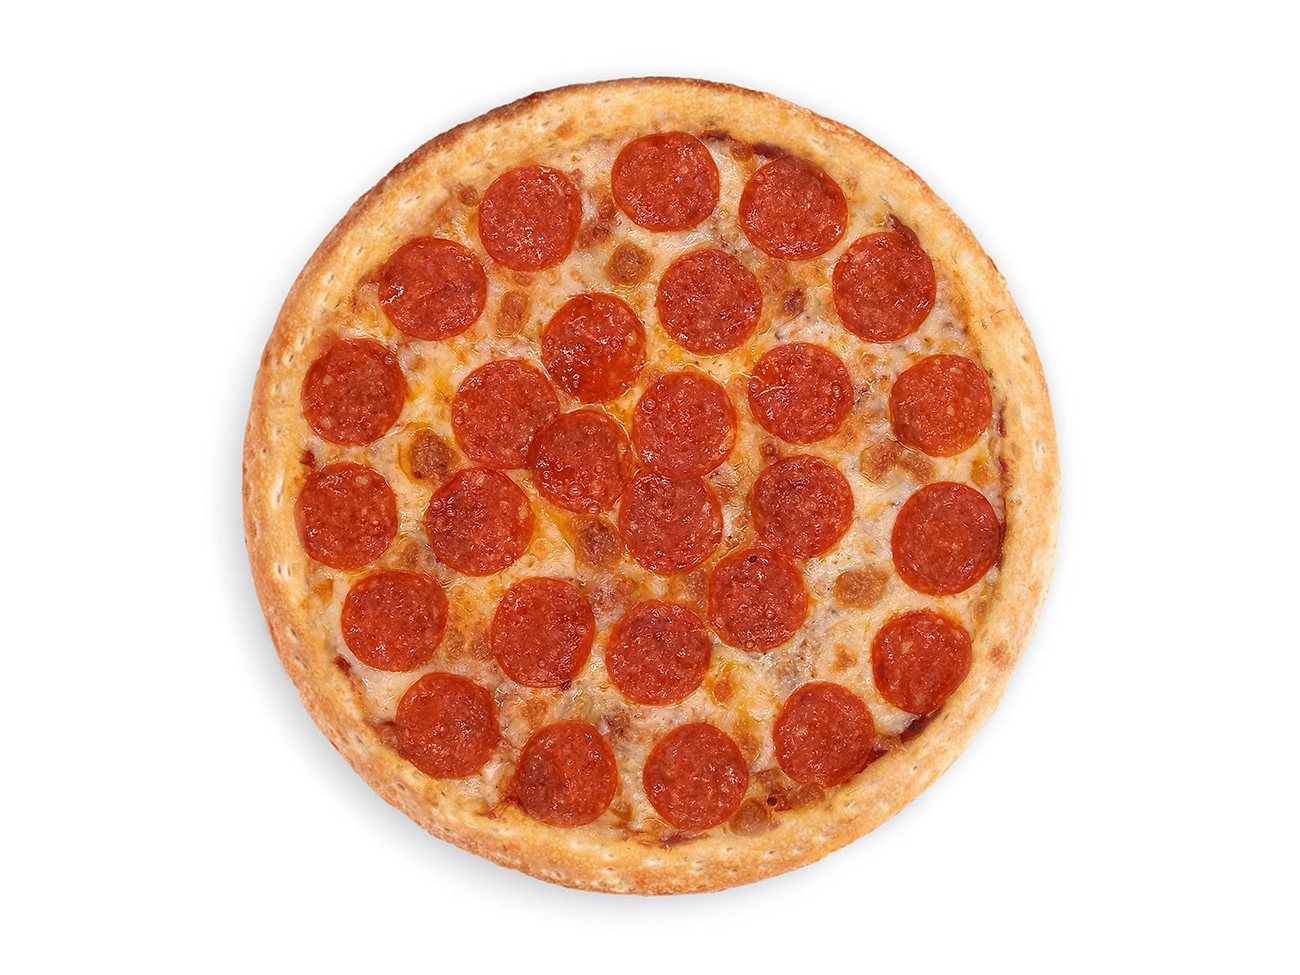 технологические карты для пиццы пепперони фото 59